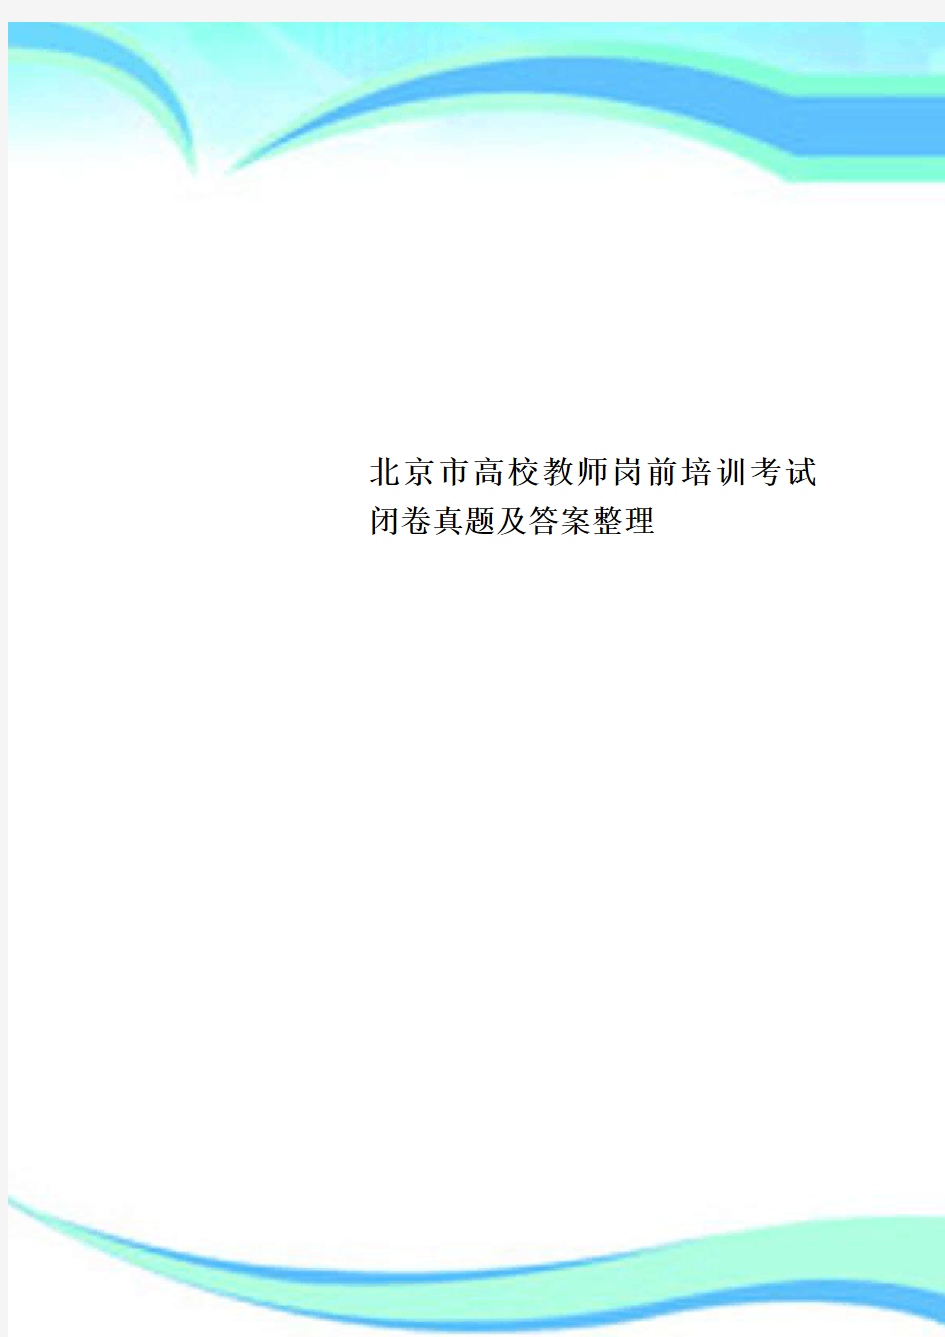 北京市高校教师岗前培训考试闭卷真题及标准答案整理